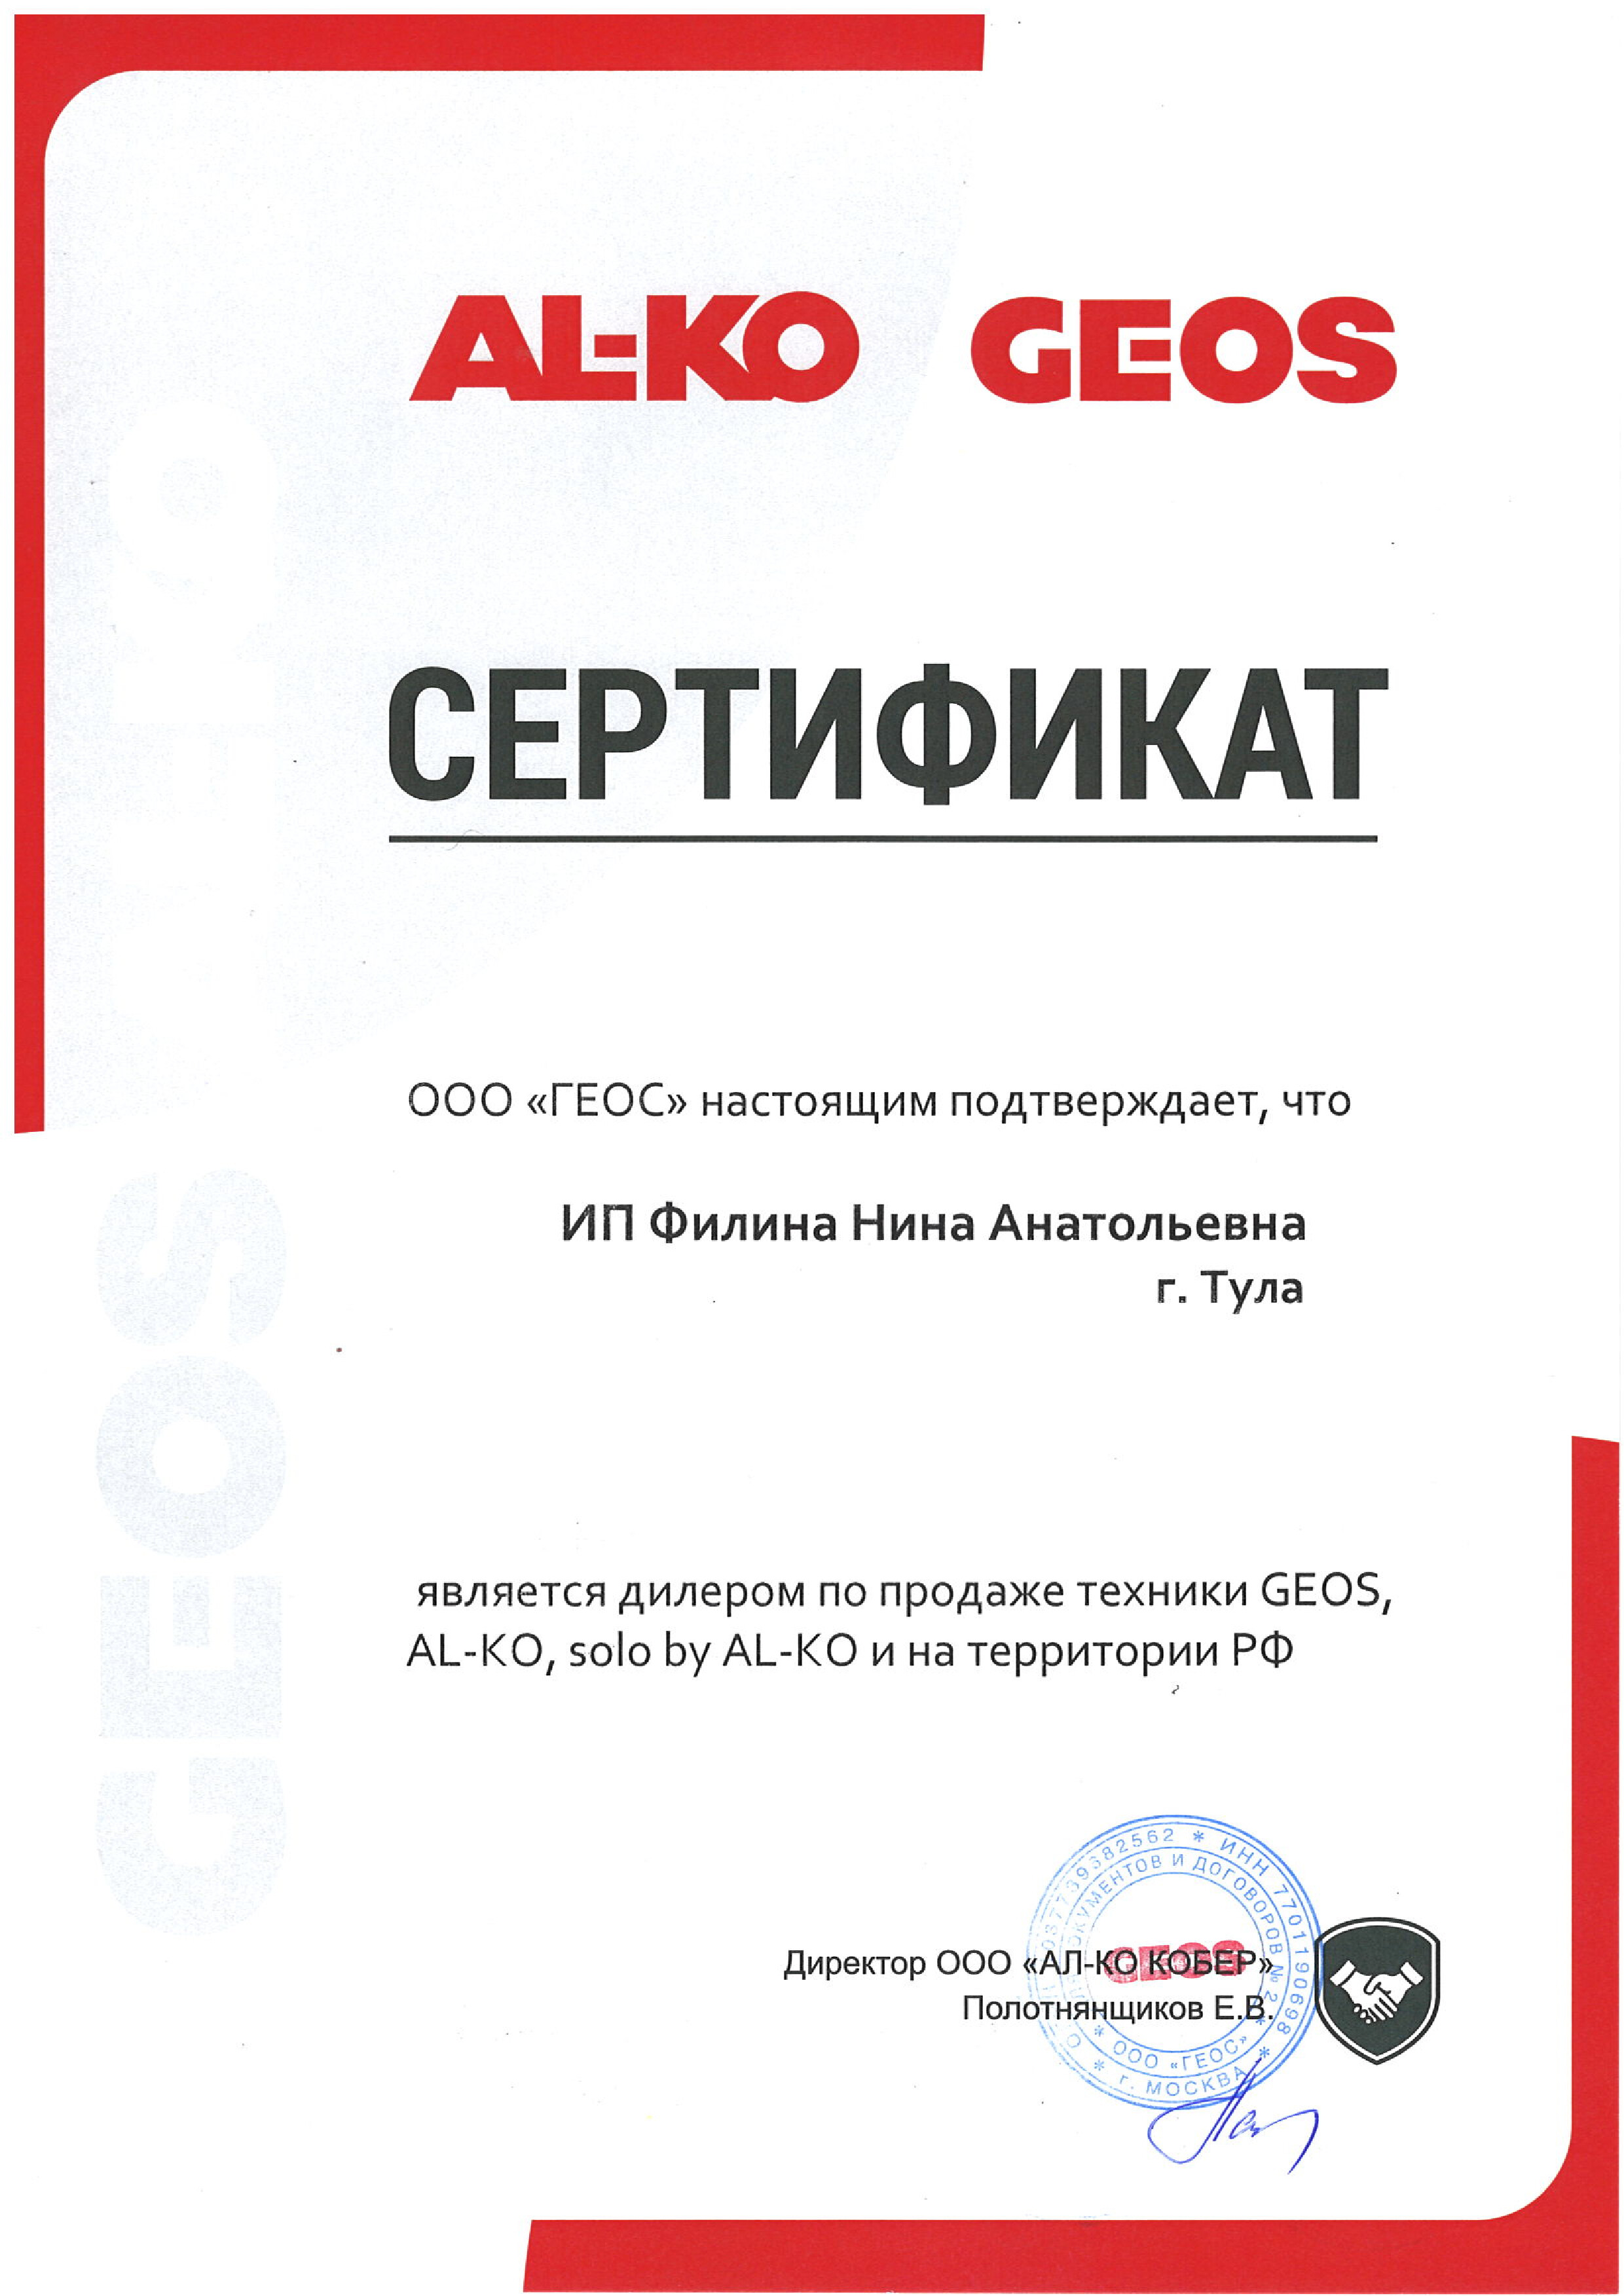 Сертификат AL-KO и Geos